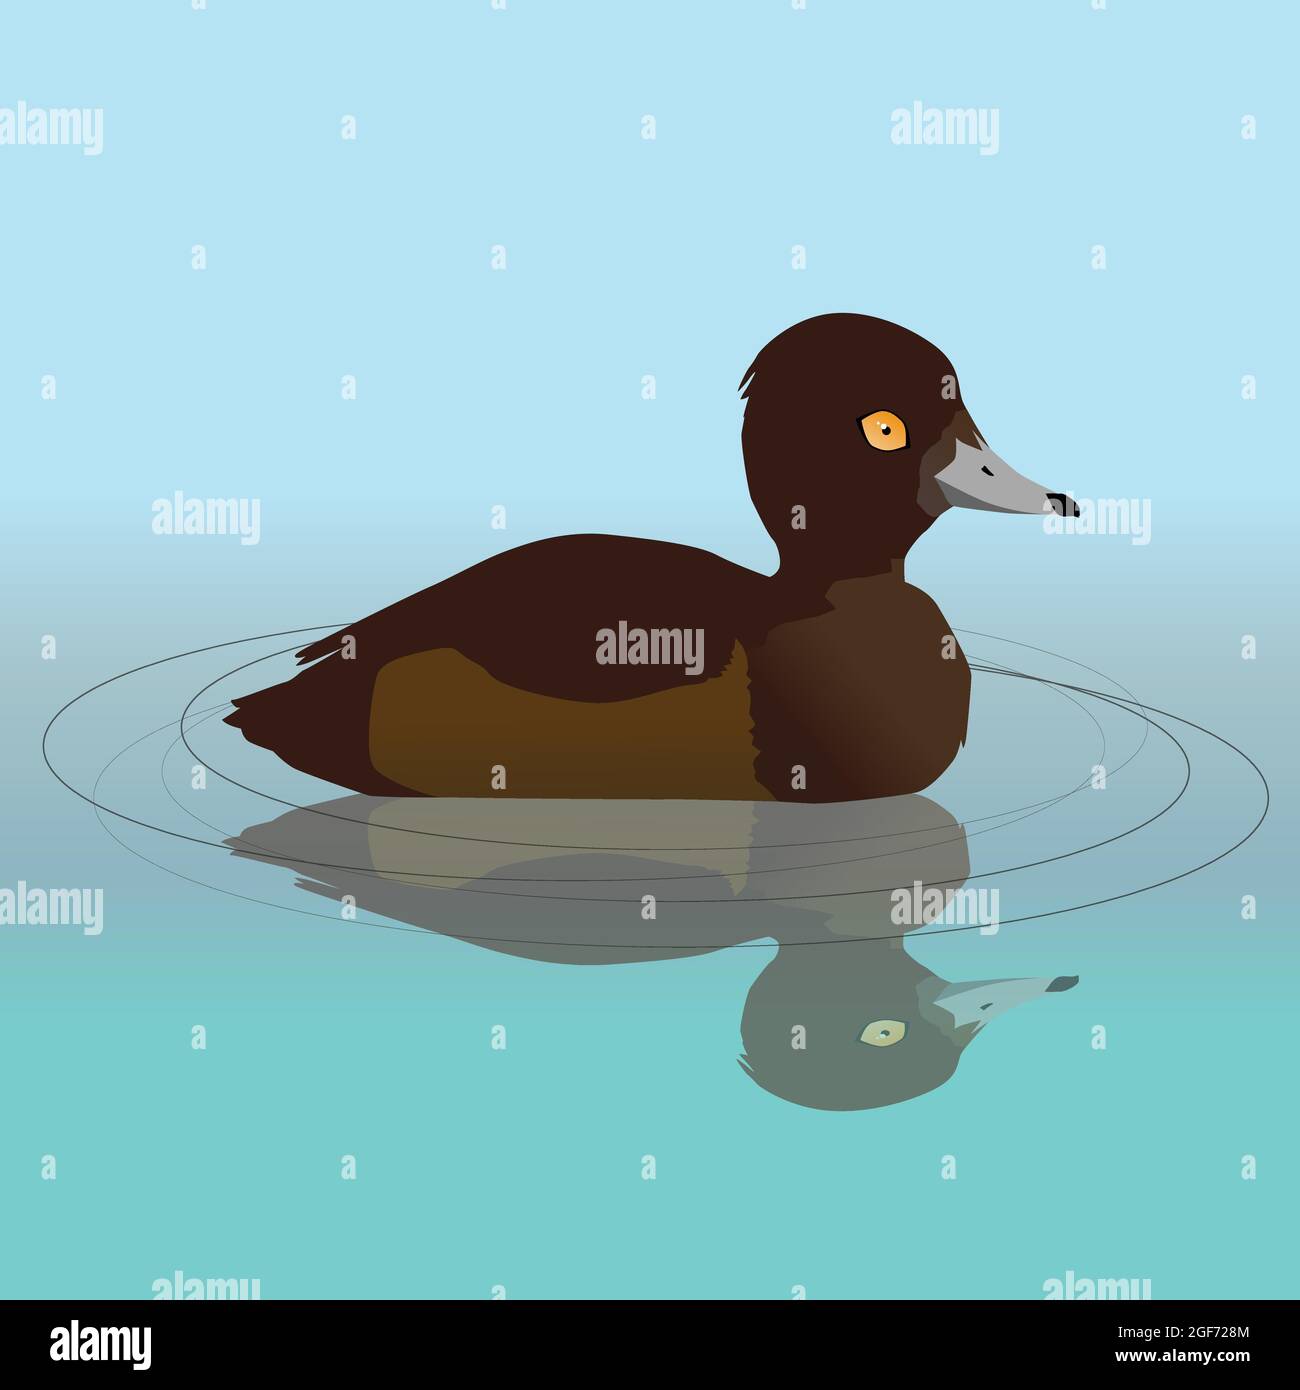 Illustration vectorielle d'un canard touffeté femelle nageant dans l'eau. Sa réflexion est visible dans l'eau. Illustration de Vecteur